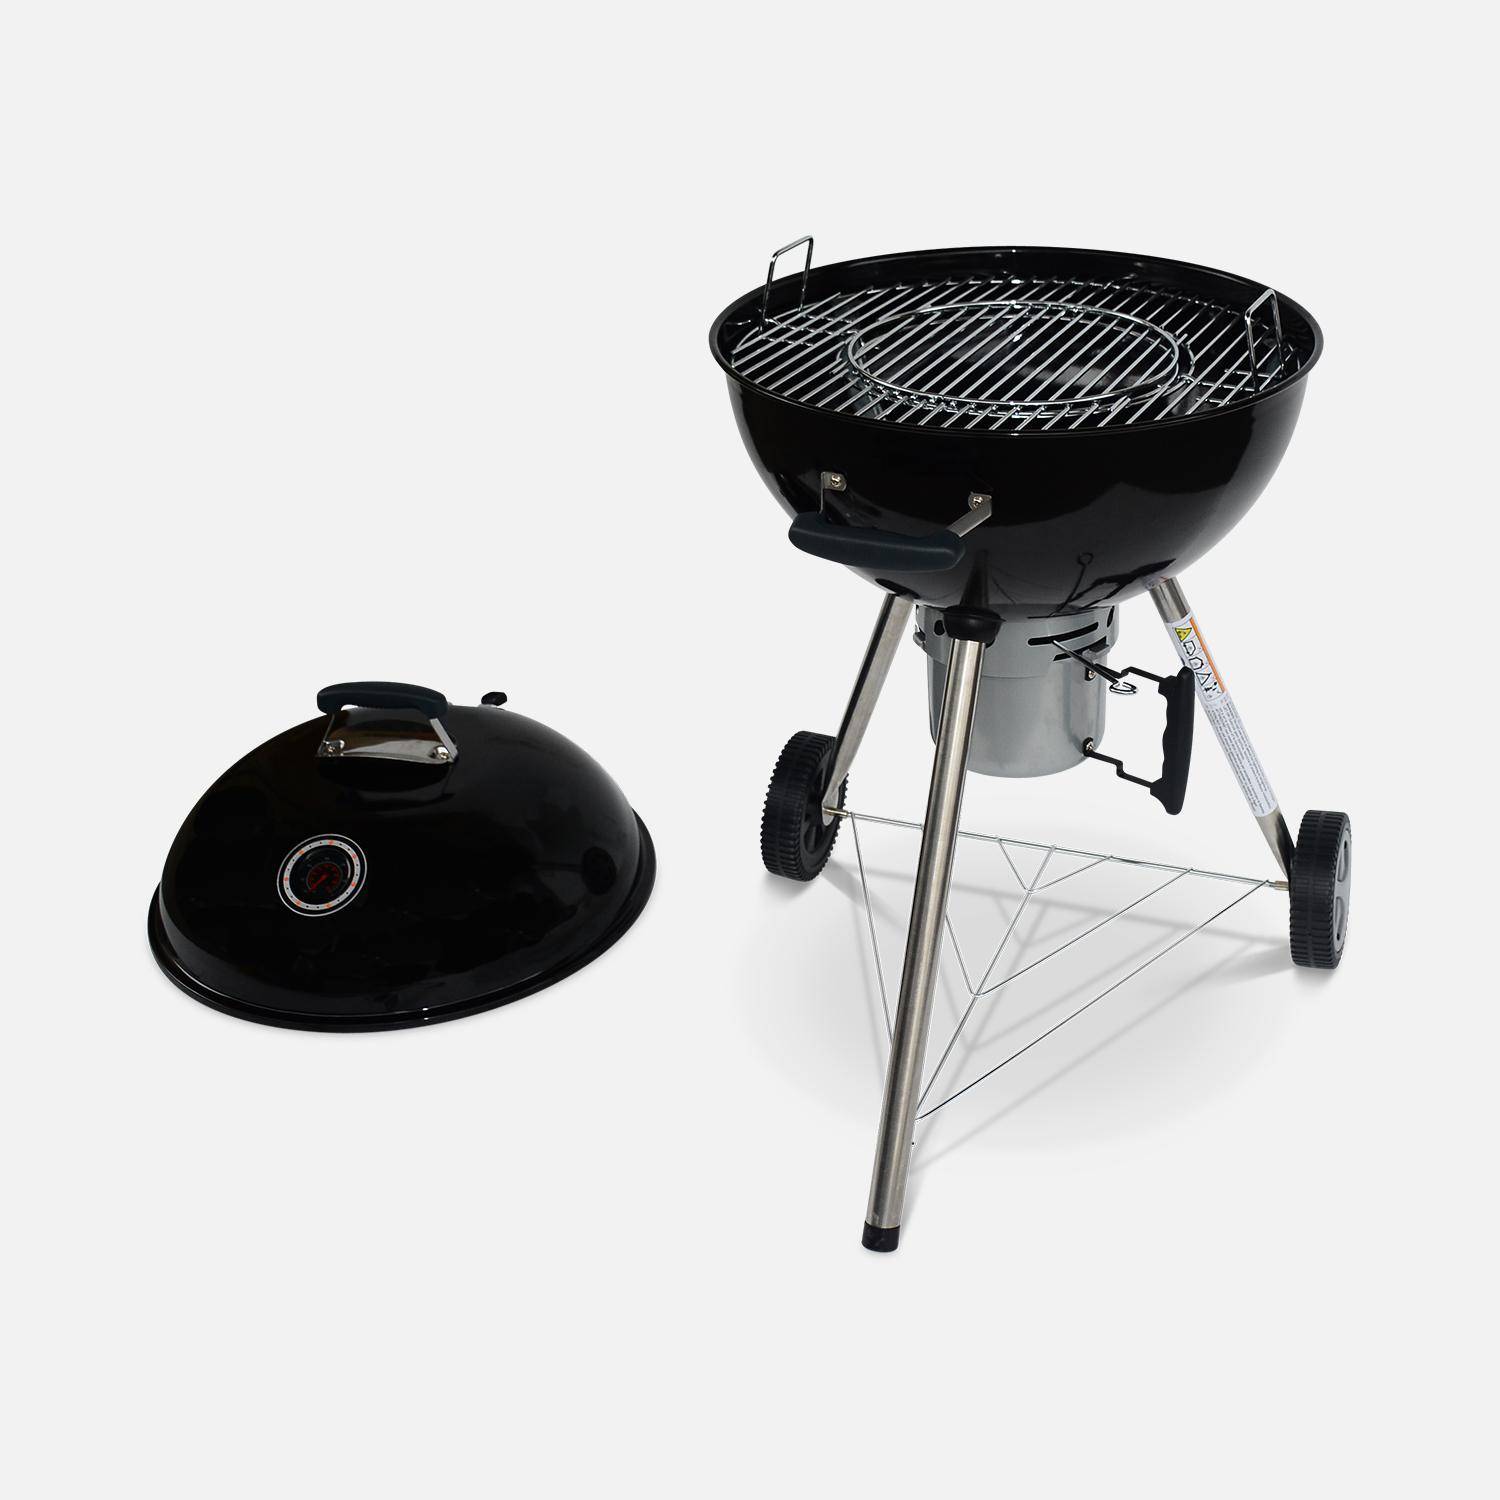 Barbecue PREMIUM charbon de bois Ø 57cm - Charles - Noir émaillé, barbecue avec grille amovible, aérateurs, fumoir, récupérateur de cendres, souffleur offert Photo4